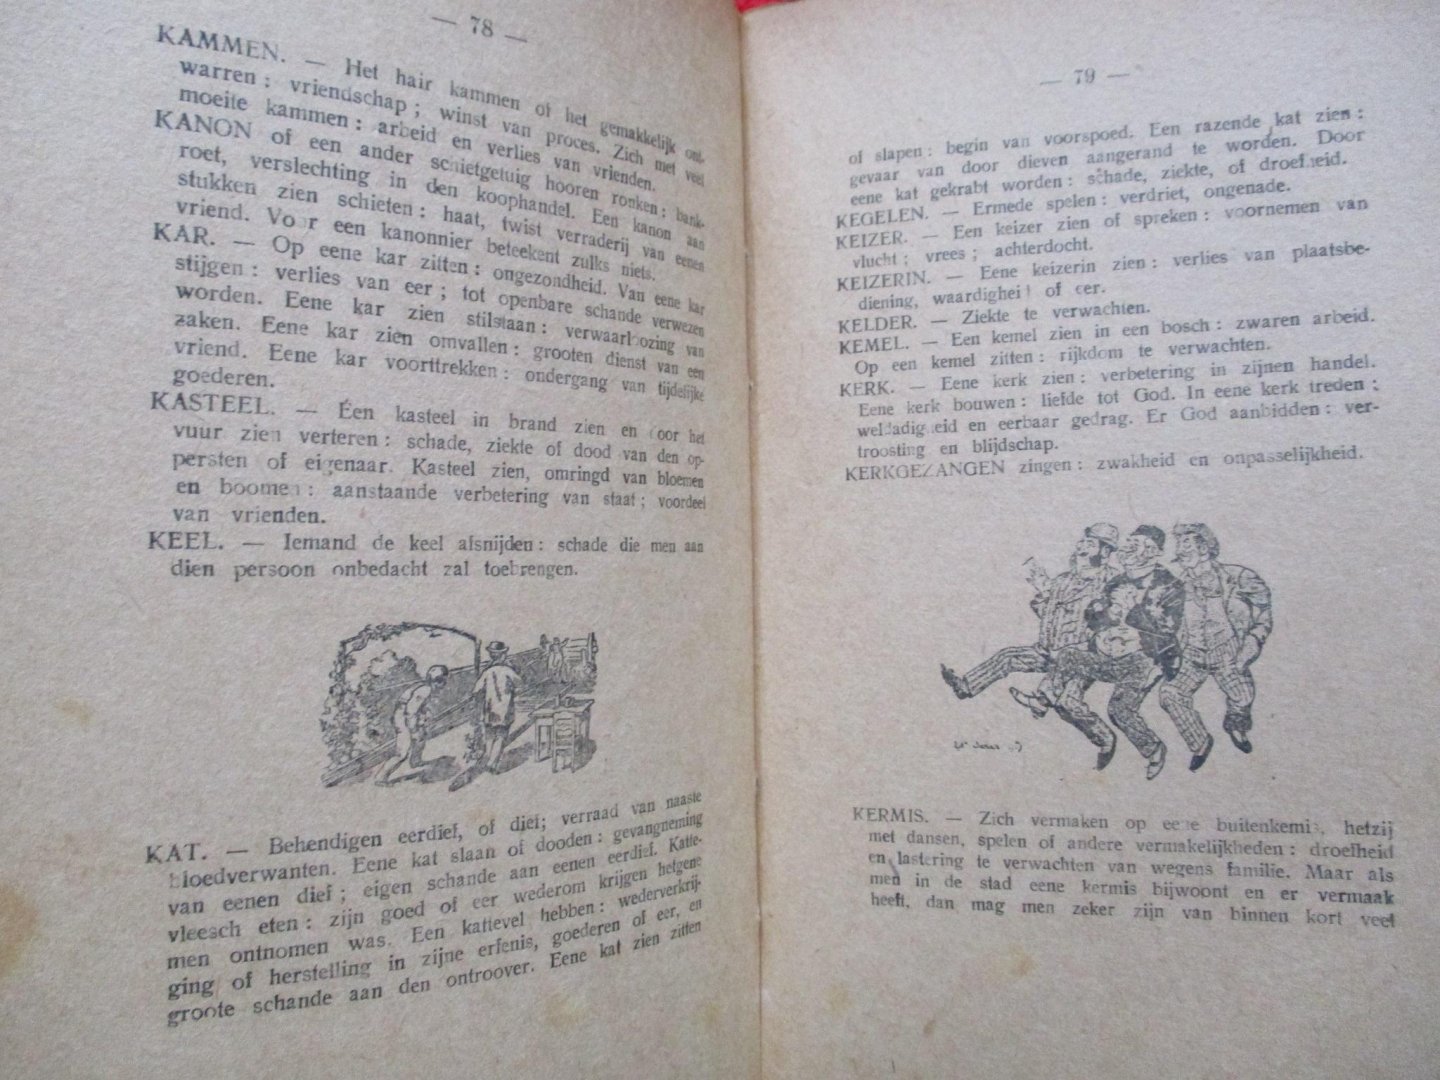 Delbaudt - Groote dubbele Droomboek, of de Sleutel der nachtelijke Verschijningen.